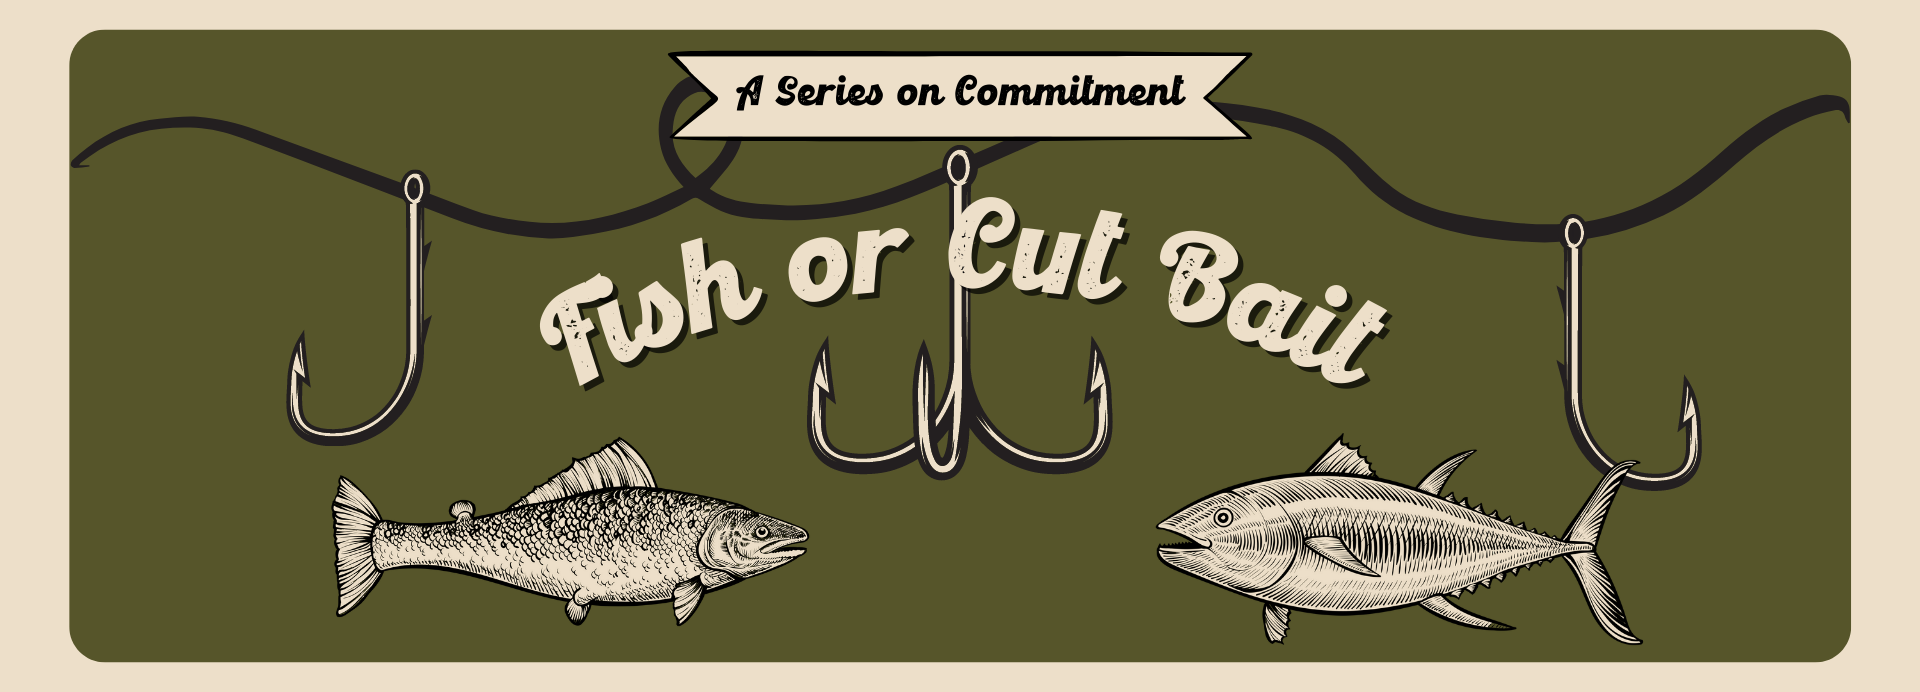 Fish or Cut Bait  GracePointe Church